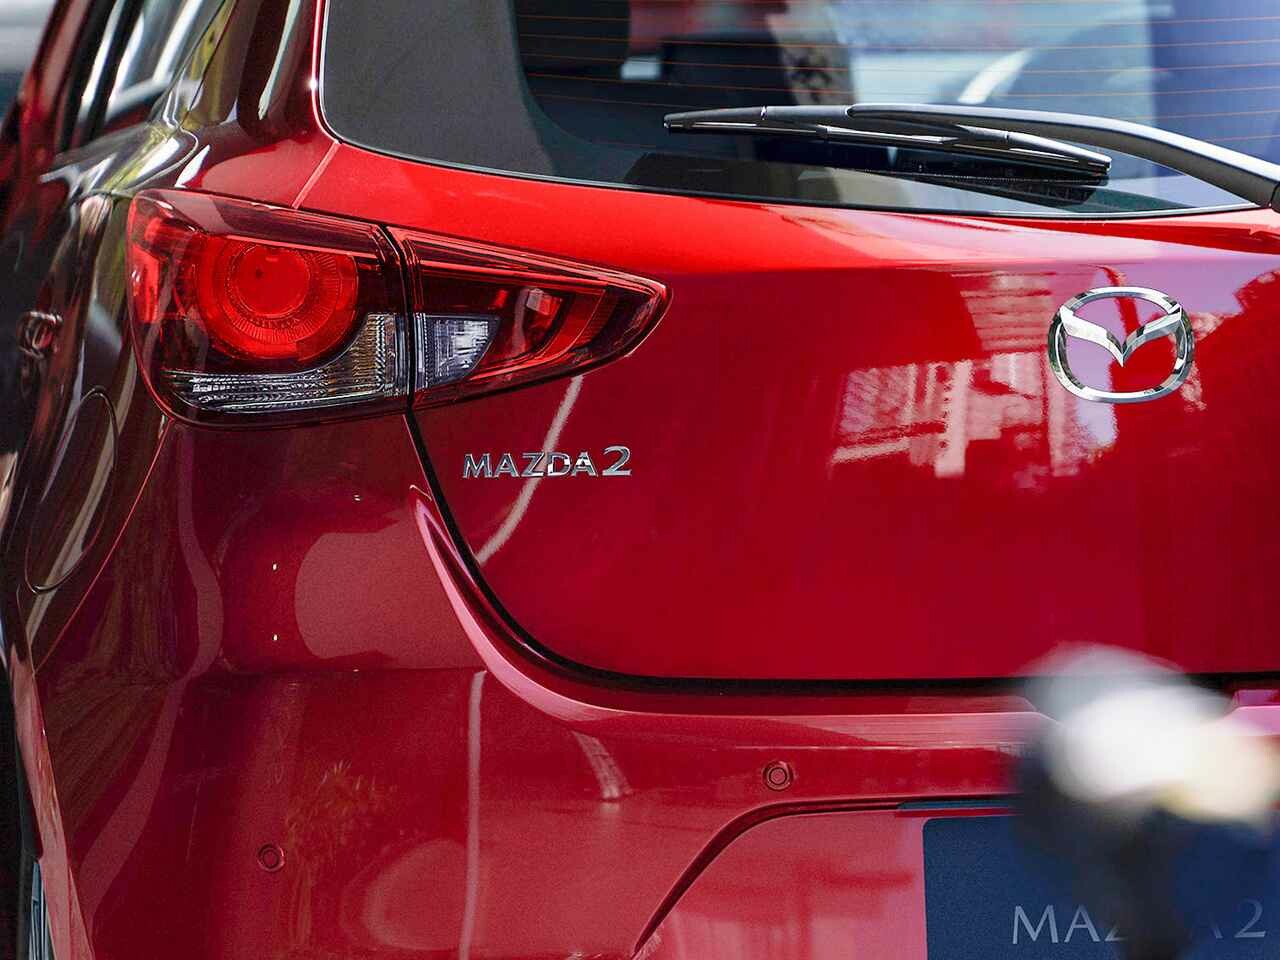 マツダ デミオは「MAZDA 2」へ。車名変更だけじゃない、デザイン刷新ともなうマイナーチェンジ